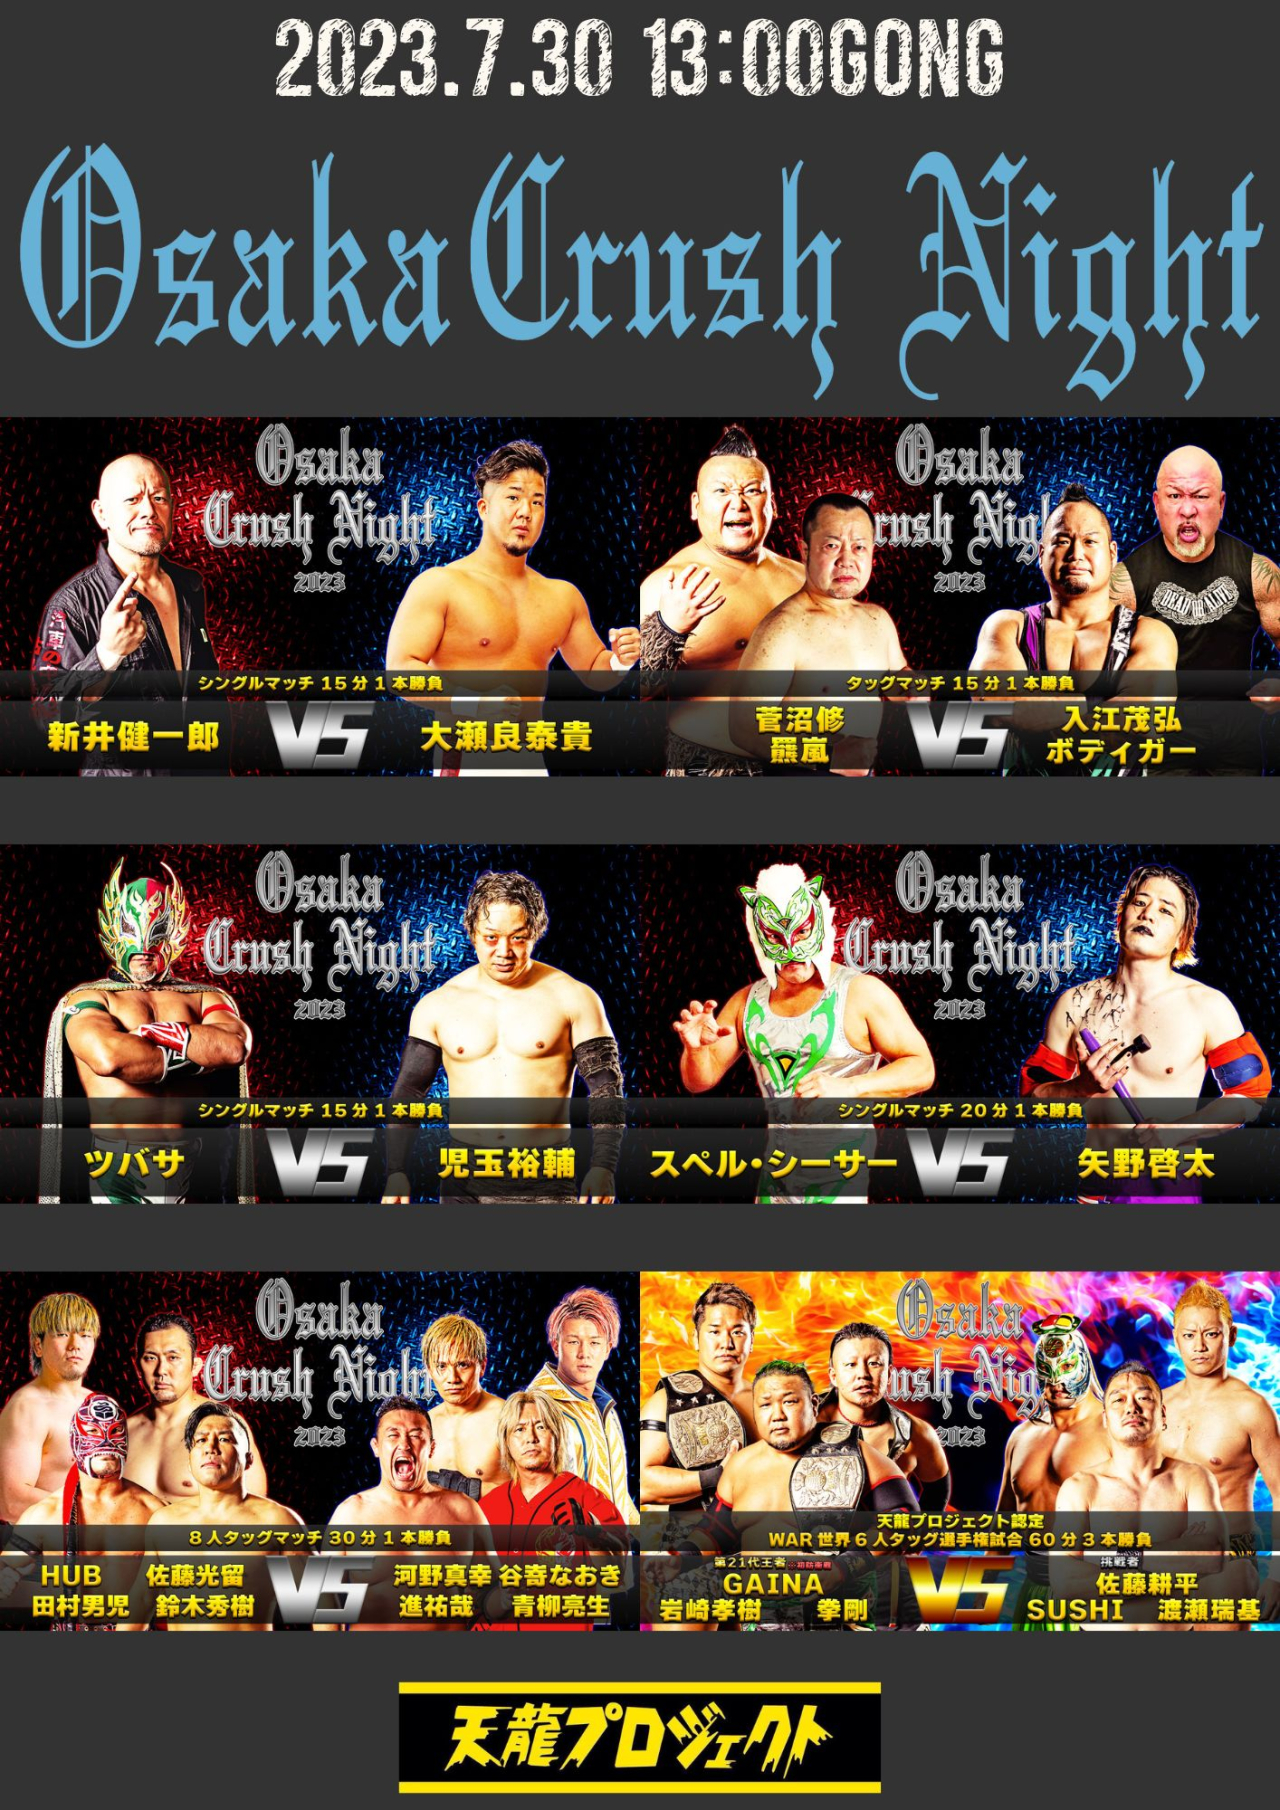 7.30『Osaka Crush Night2023』全対戦カード決定のお知らせ